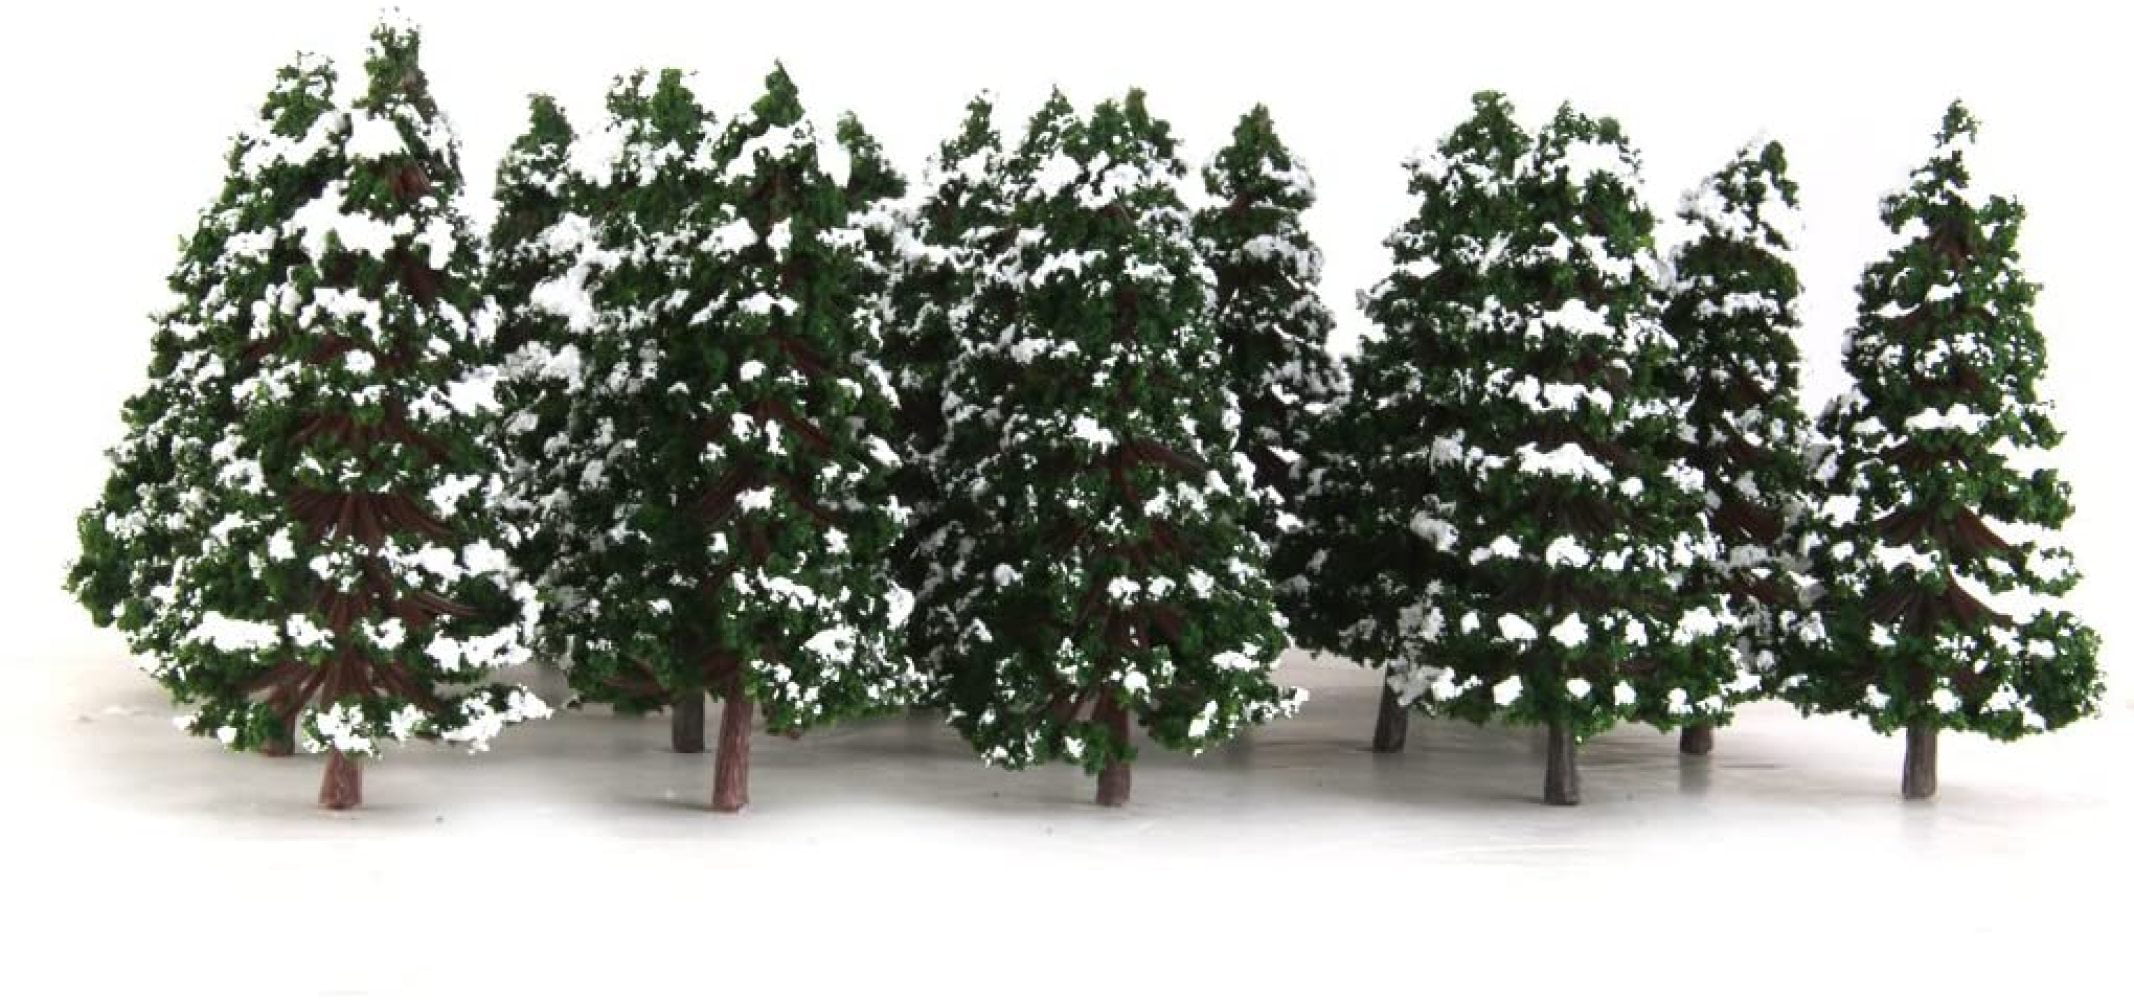 20 Pine Trees Winter White Snow Model Train Railroad Scenery Landscape 8cm